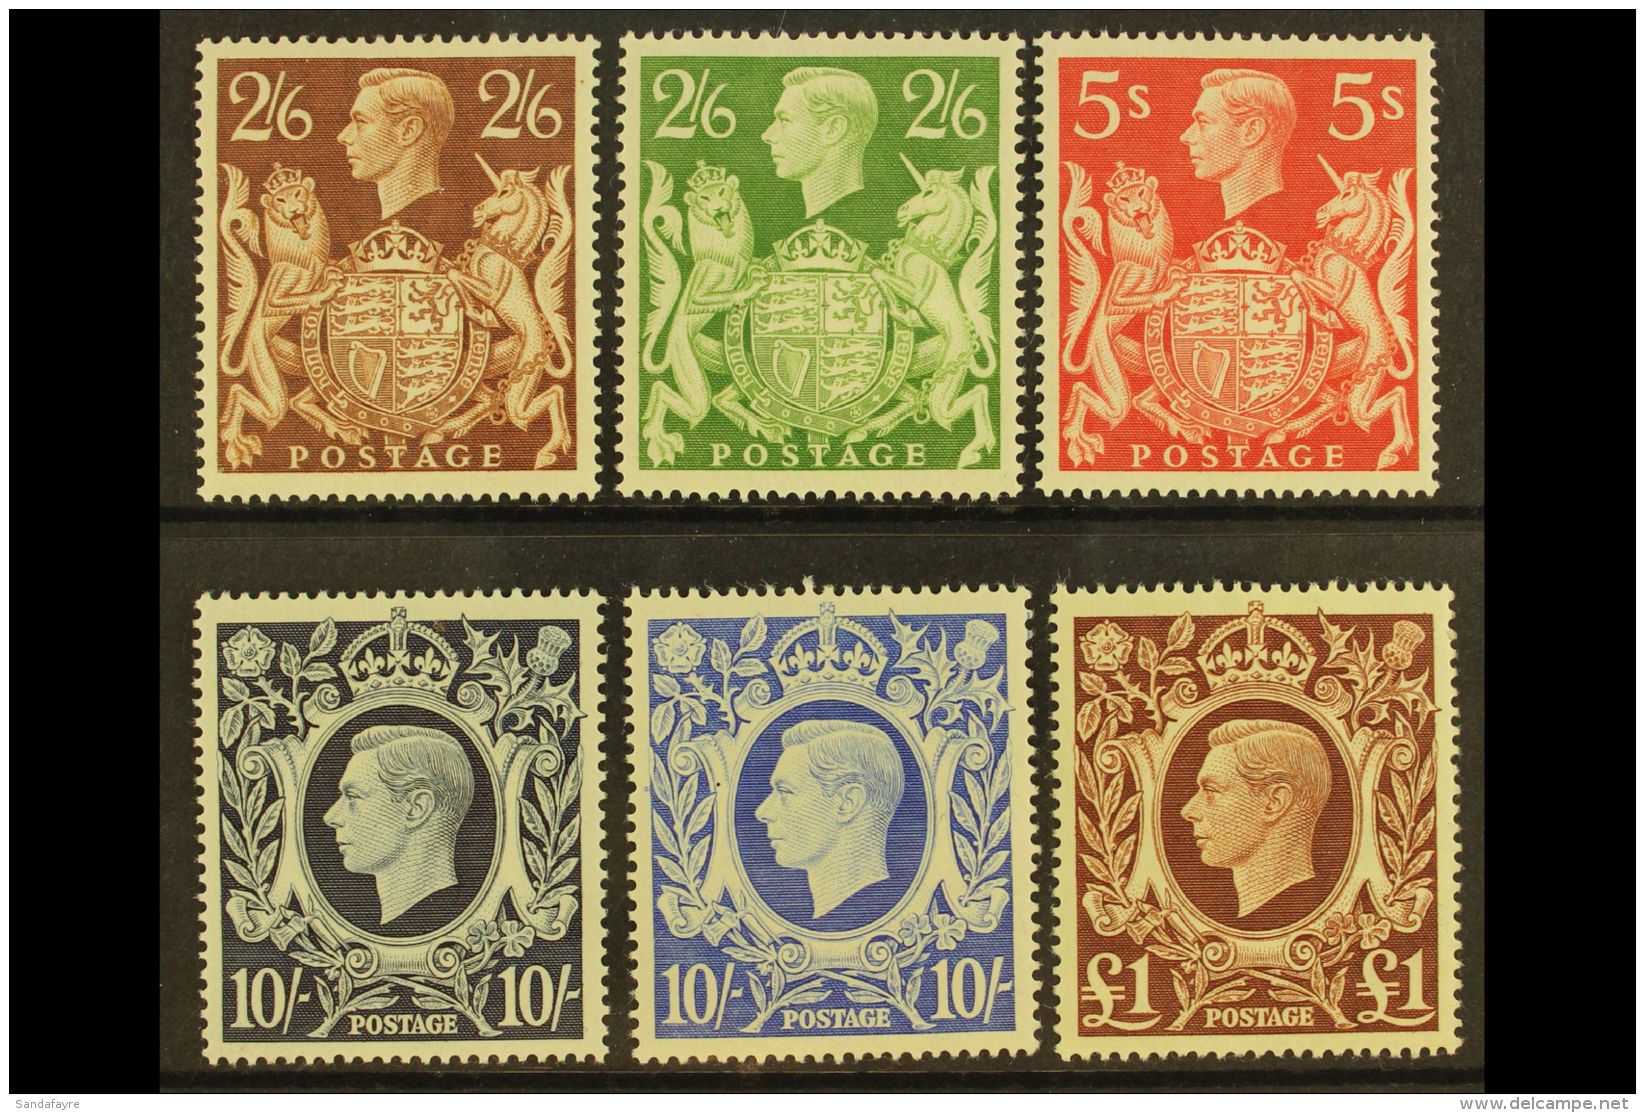 1939-48 KGVI High Values Complete Set, SG 476/78c, Very Fine Mint. (6 Stamps) For More Images, Please Visit... - Non Classés